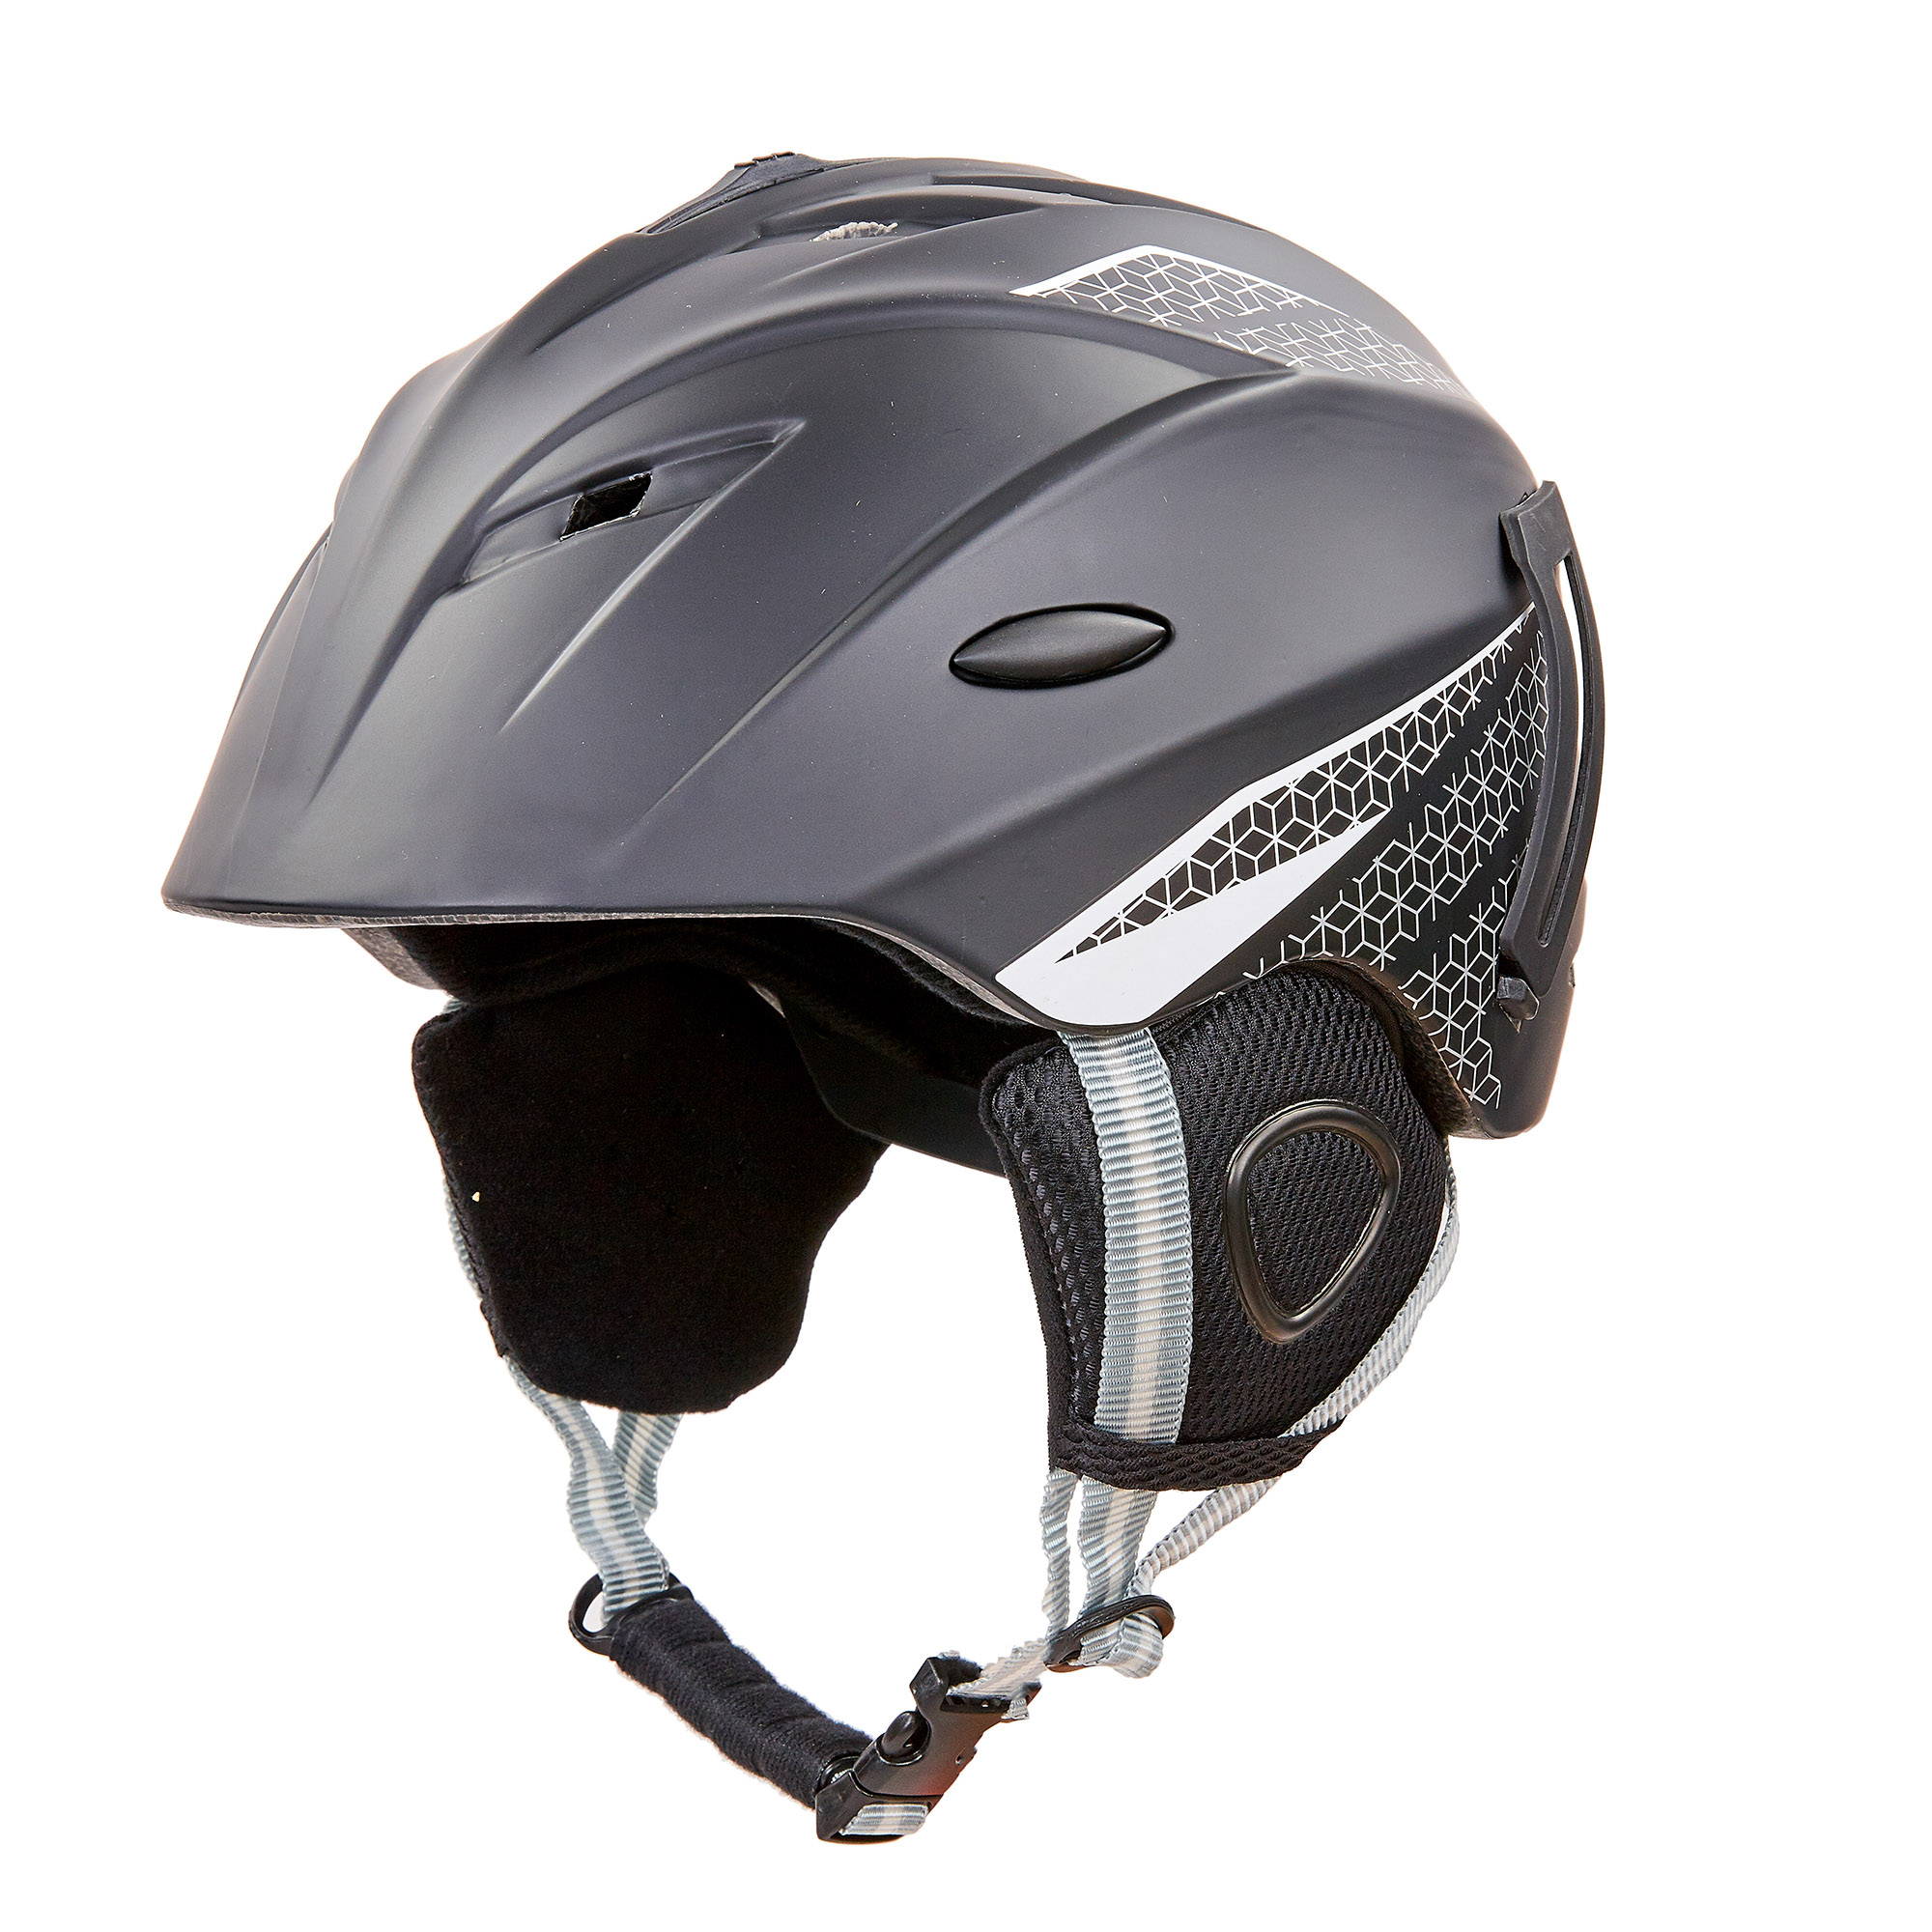 Шлем горнолыжный с механизмом регулировки MOON MS-6287 p-p 58-61 Черный-белый (AN0283)